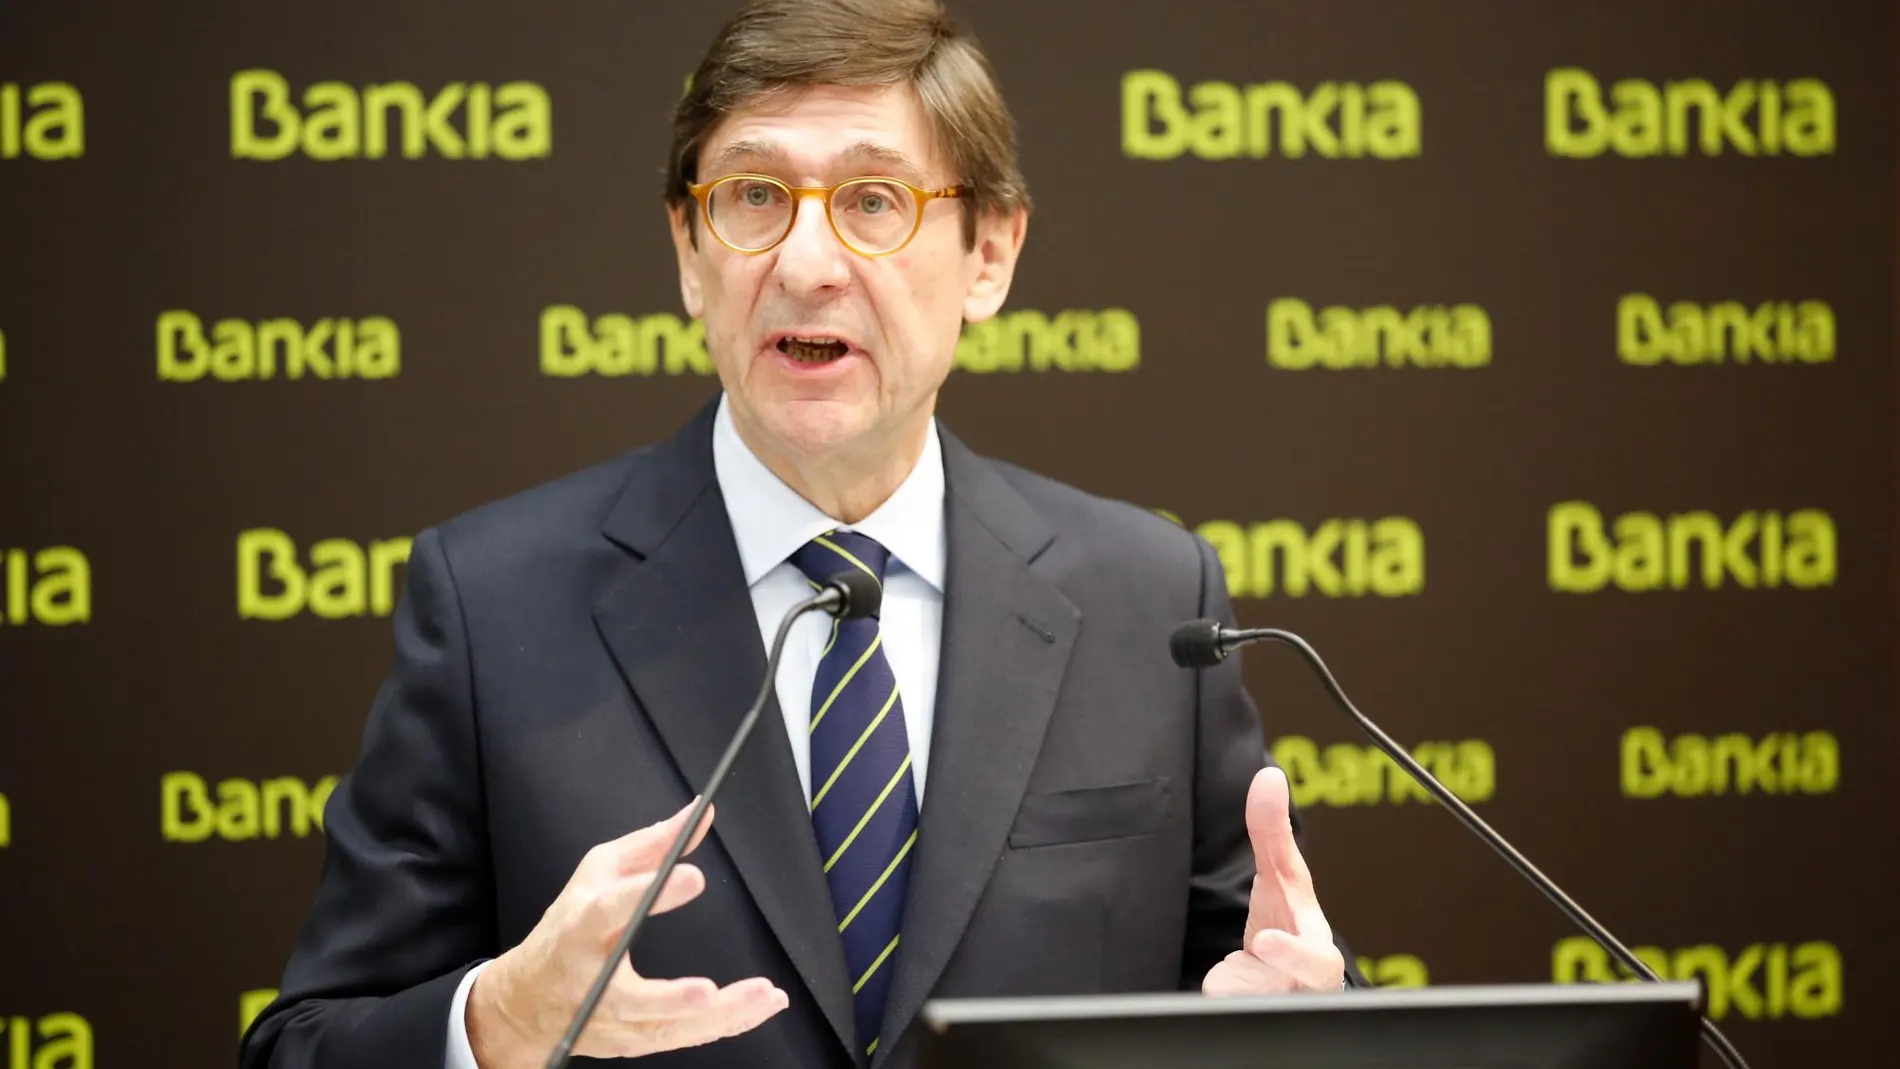 José Ignacio Goirigolzarri, presidente de Bankia